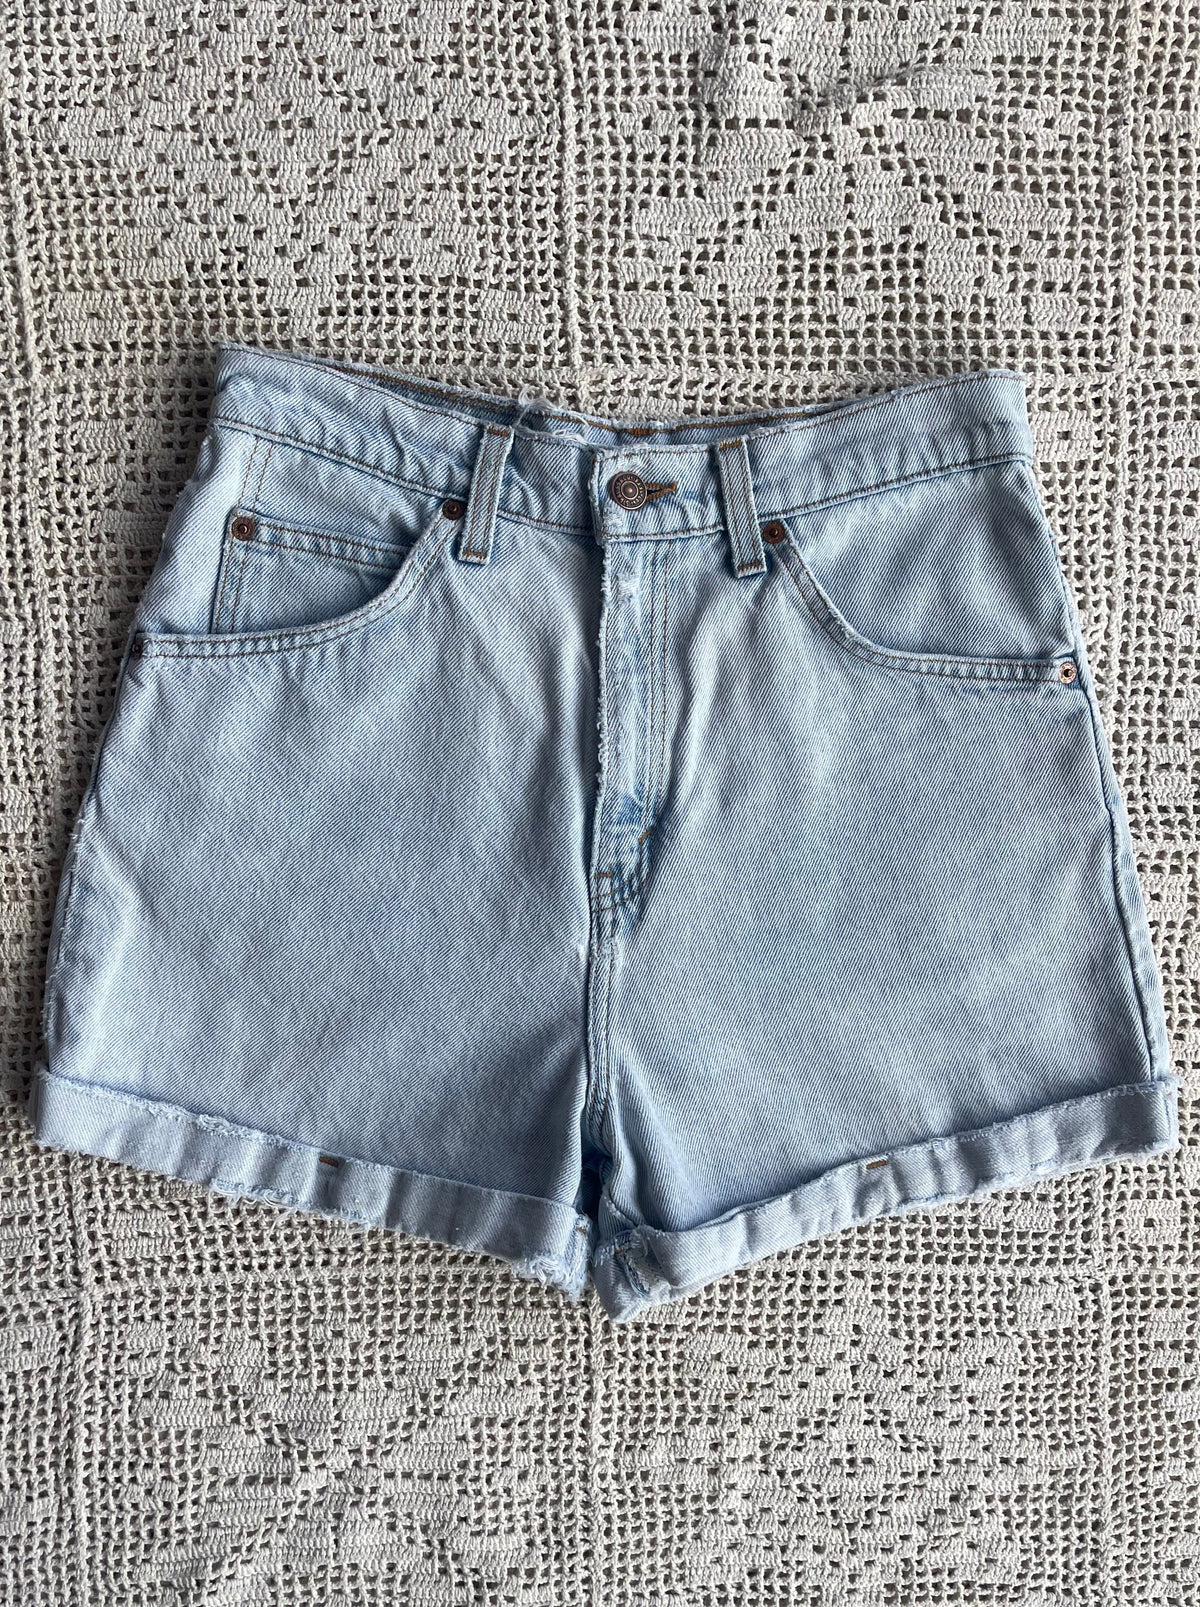 Levi's Shorts Vintage